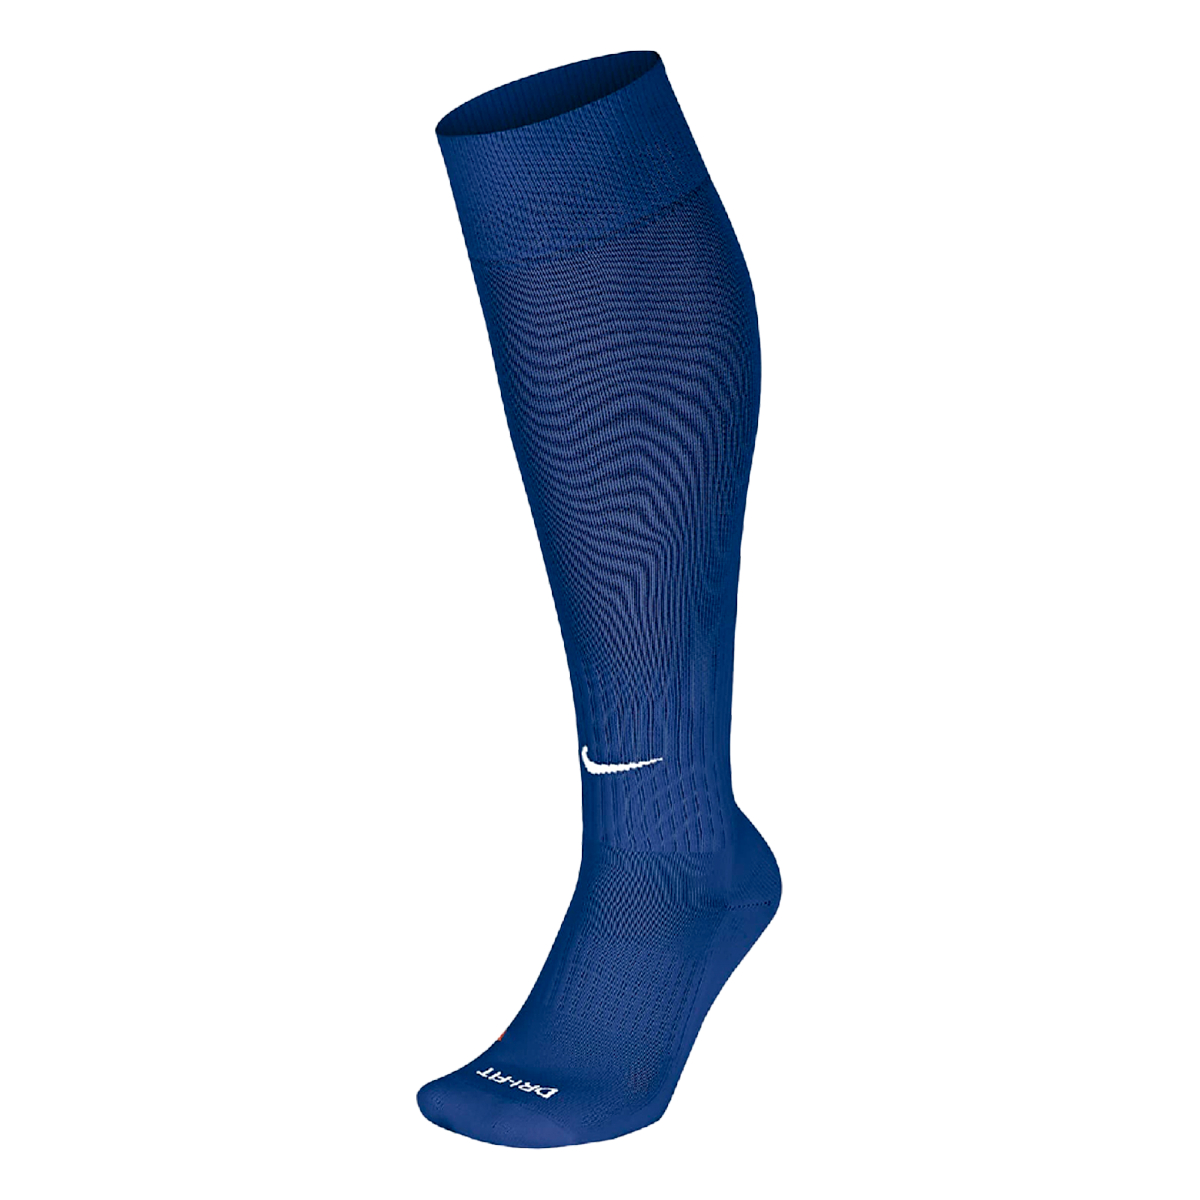 Гольфы Nike Classic Football Dri-Fit синие